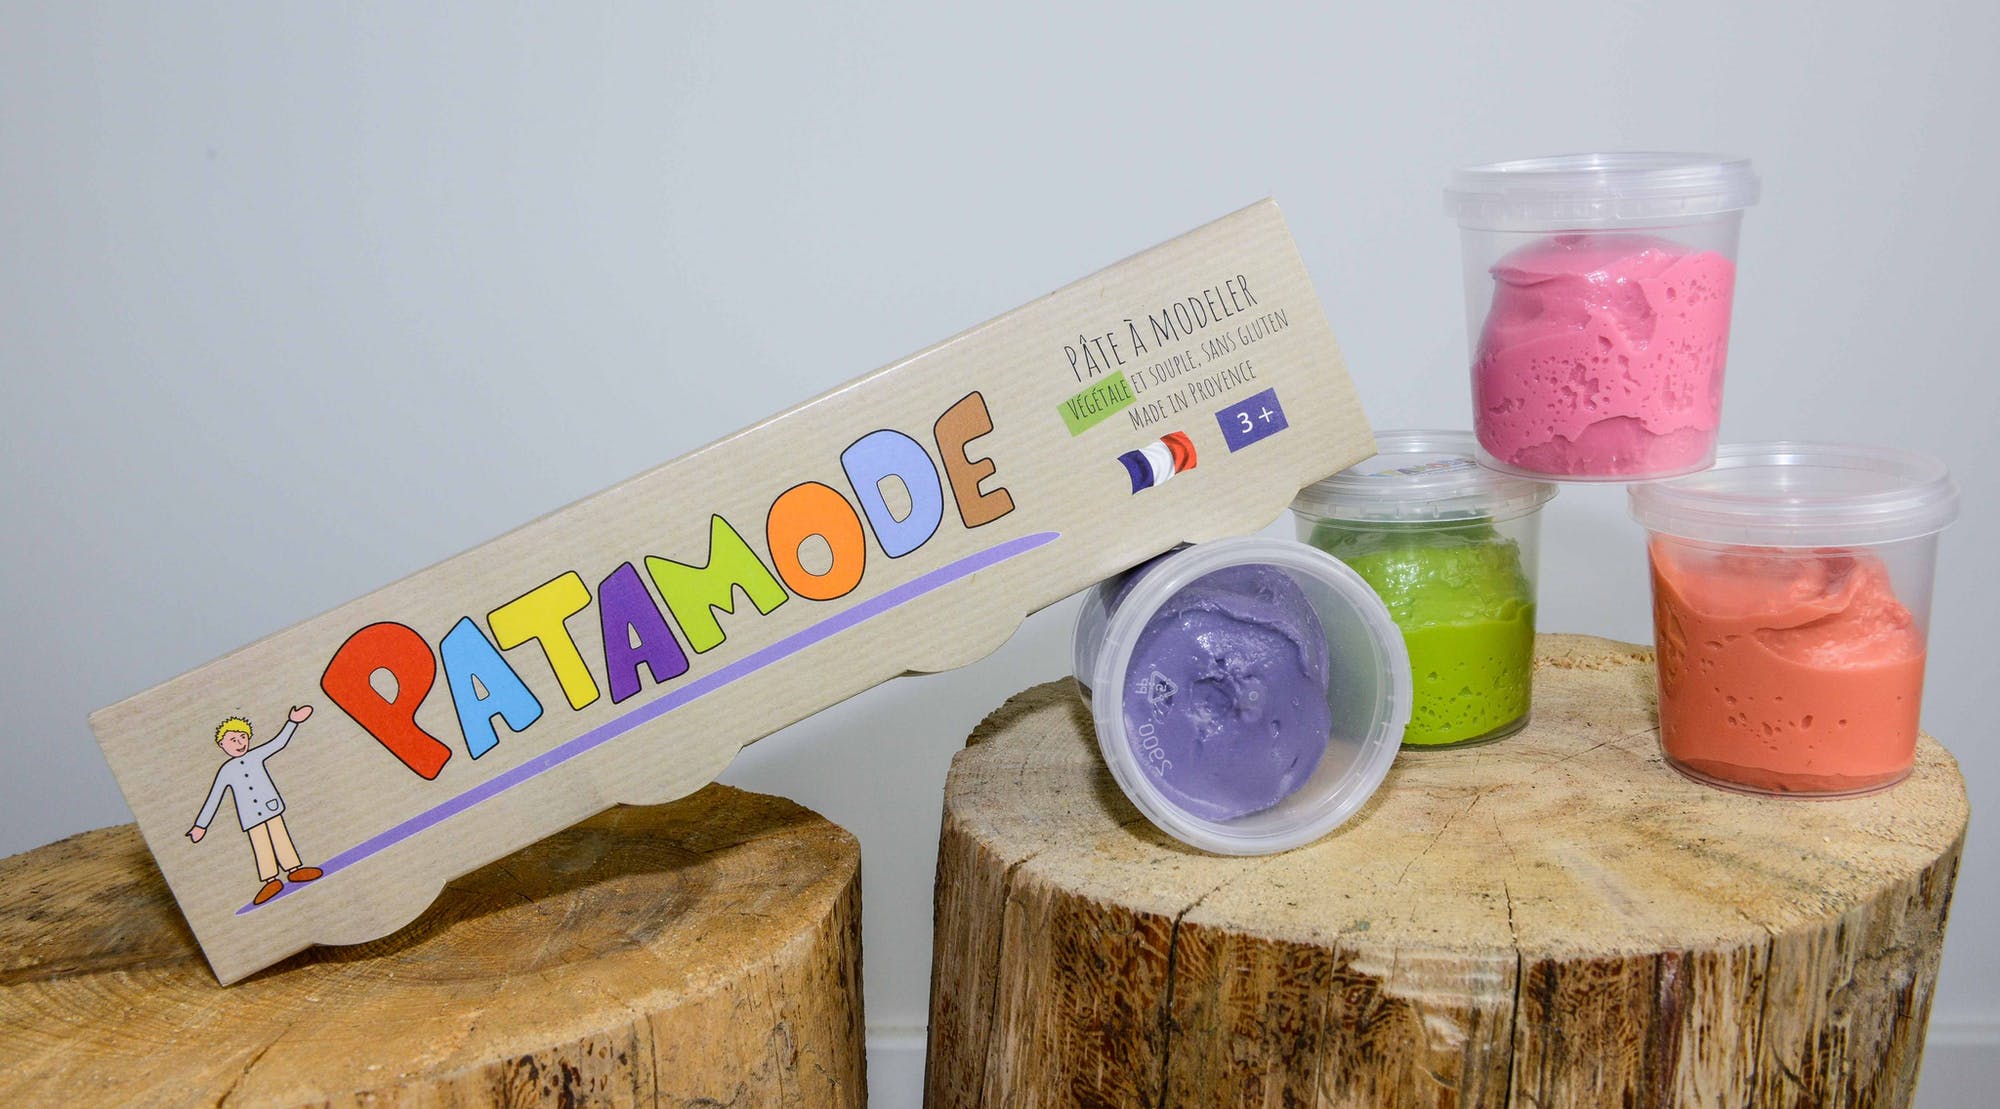 patamode pate a modeler couleurs complementaires made in france un jeu de construction une idee cadeau chez ugo et lea   (2)